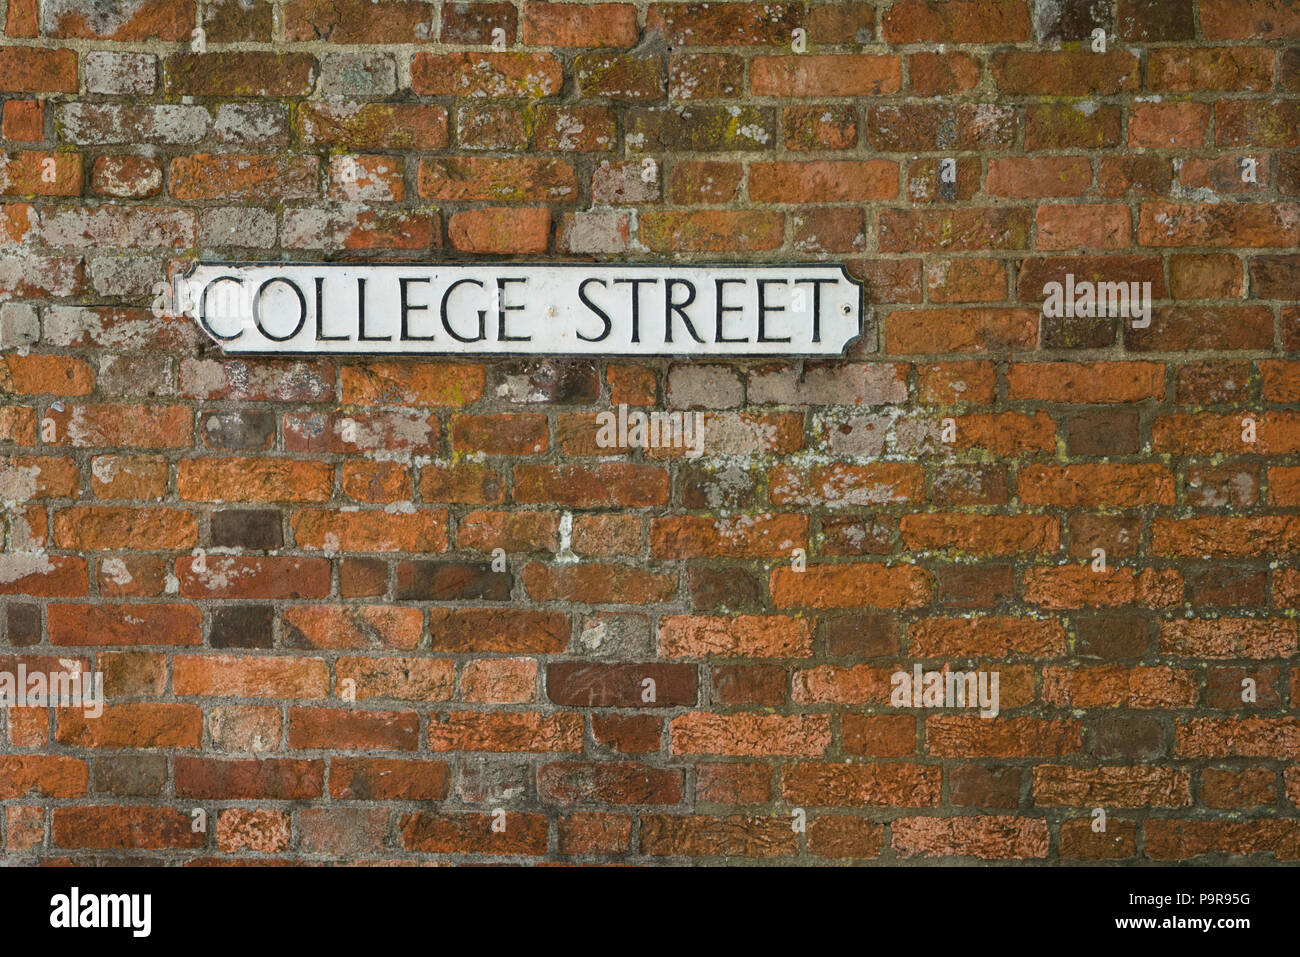 College Street, sur fond blanc, signe de nom de rue situé sur un mur de brique rouge. Banque D'Images